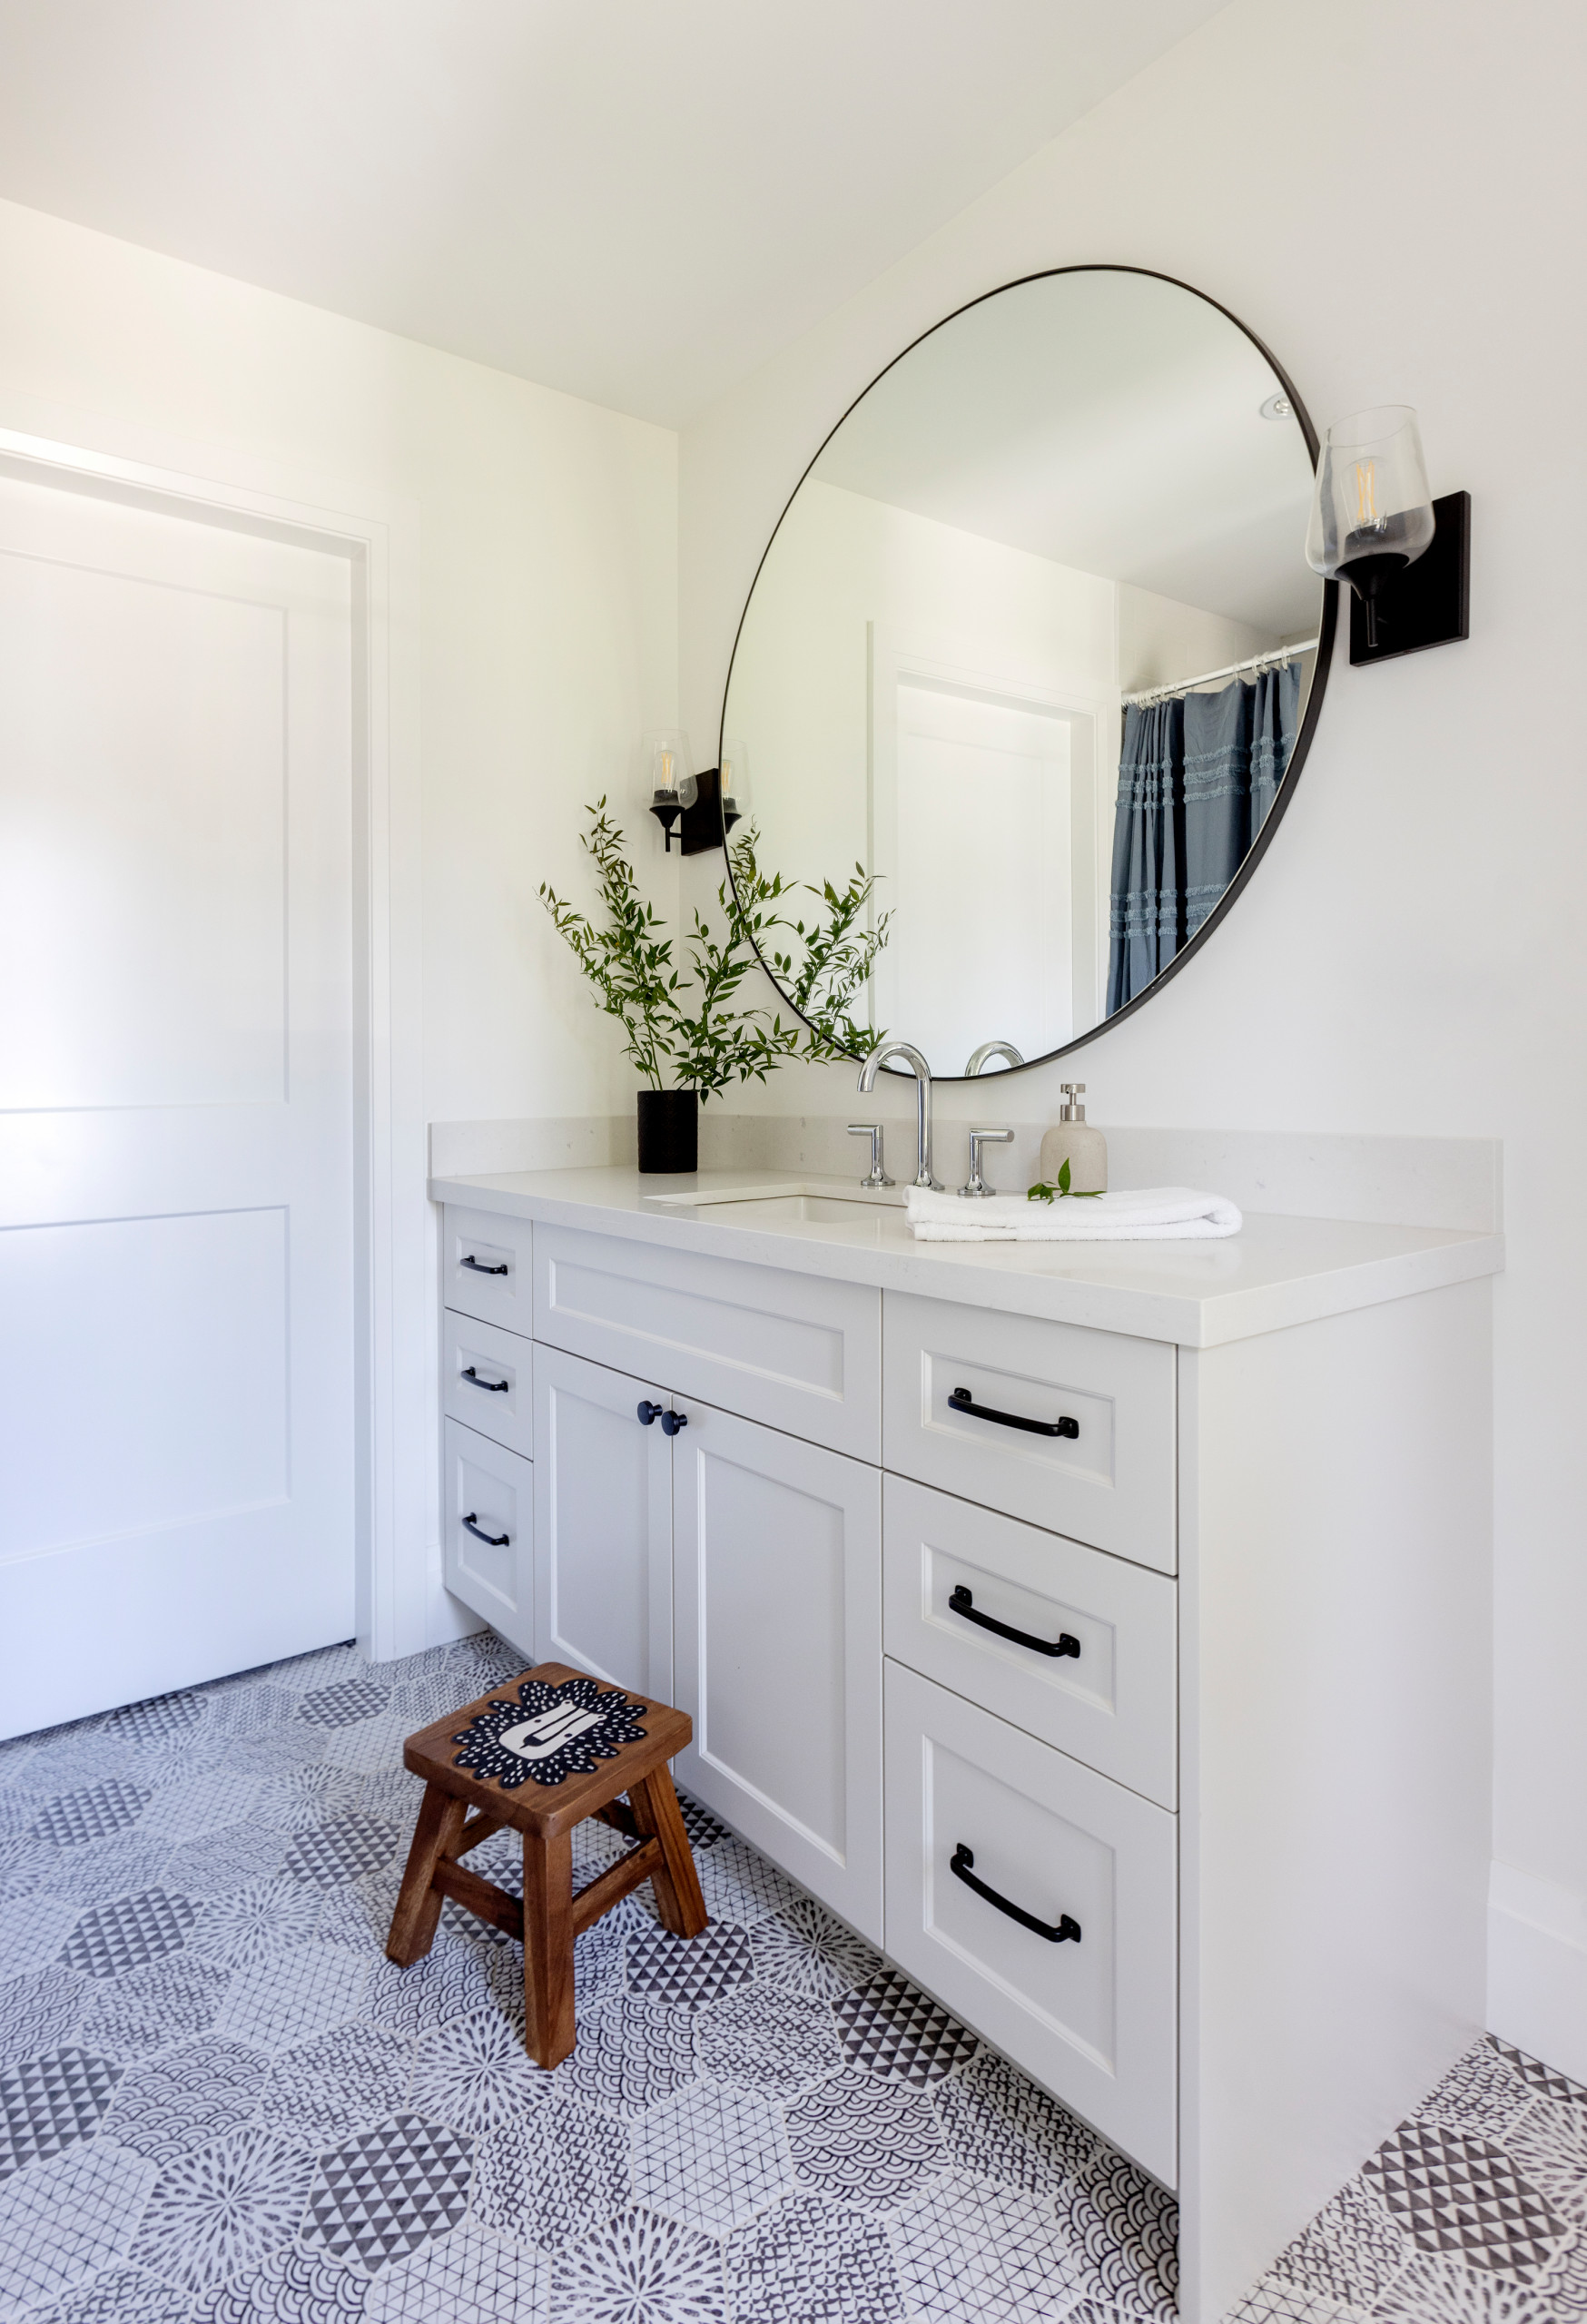 35+ Ideas for Bathroom Counter Decor